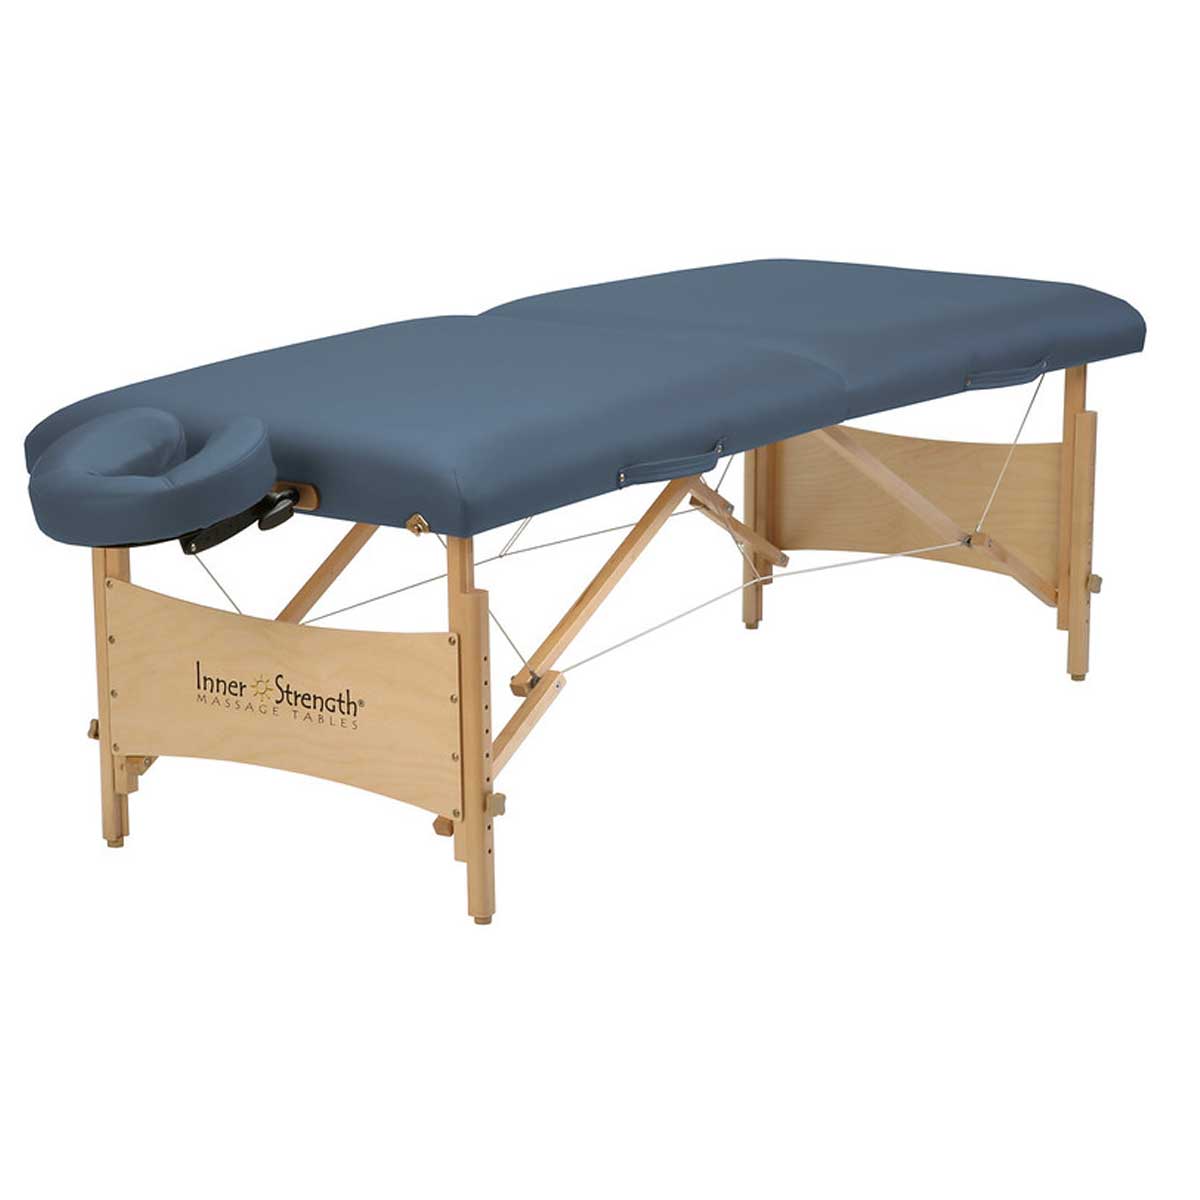 73インチ1855cmInner Strength Massage Table